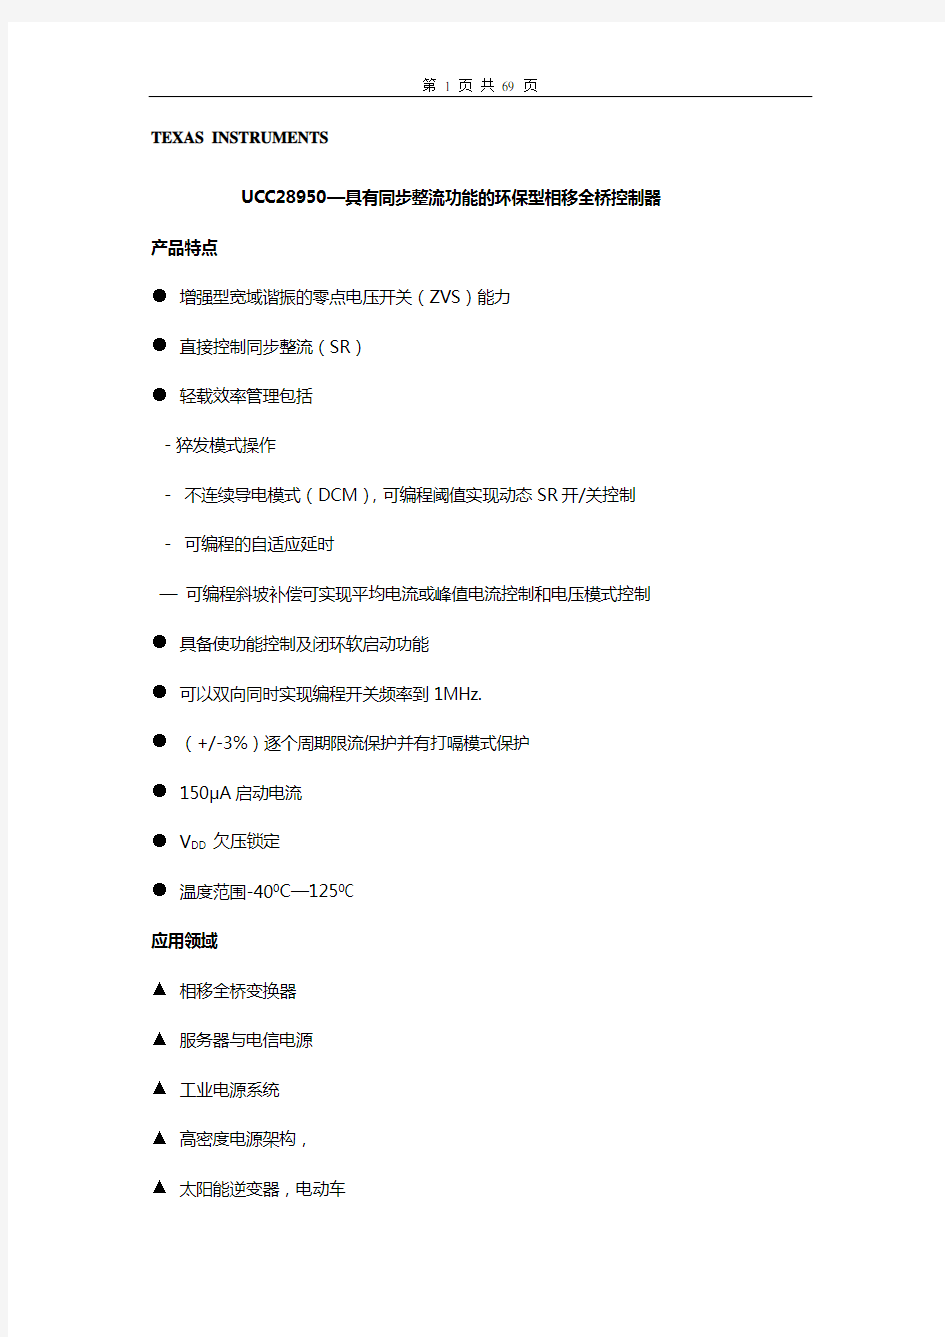 UCC28950中文版技术文档资料